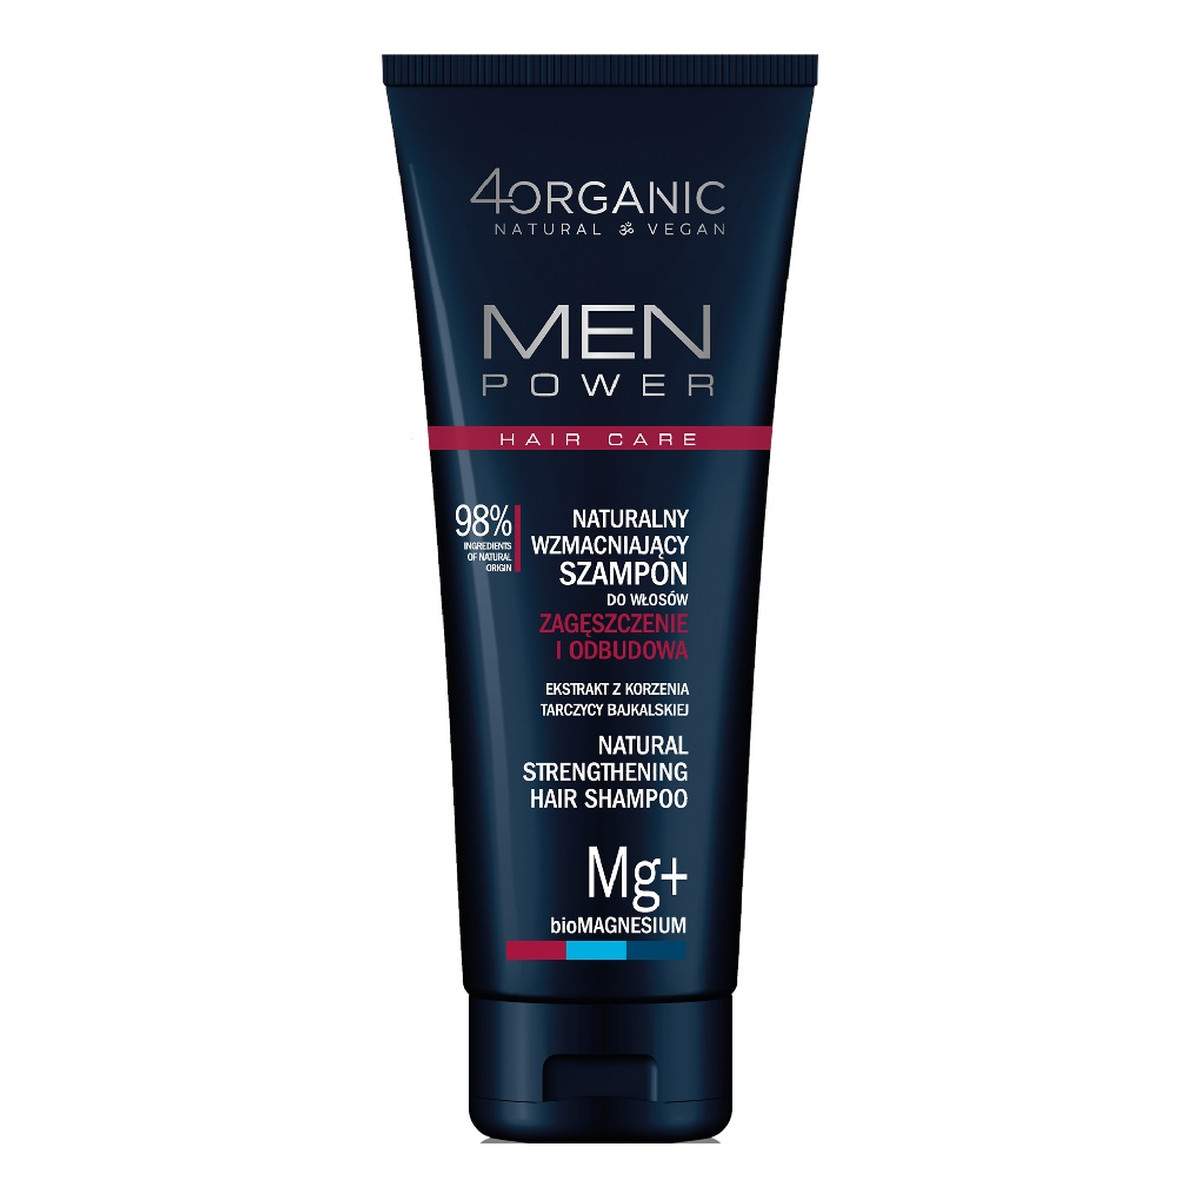 4organic Men power naturalny wzmacniający szampon do włosów zagęszczenie i odbudowa 250ml